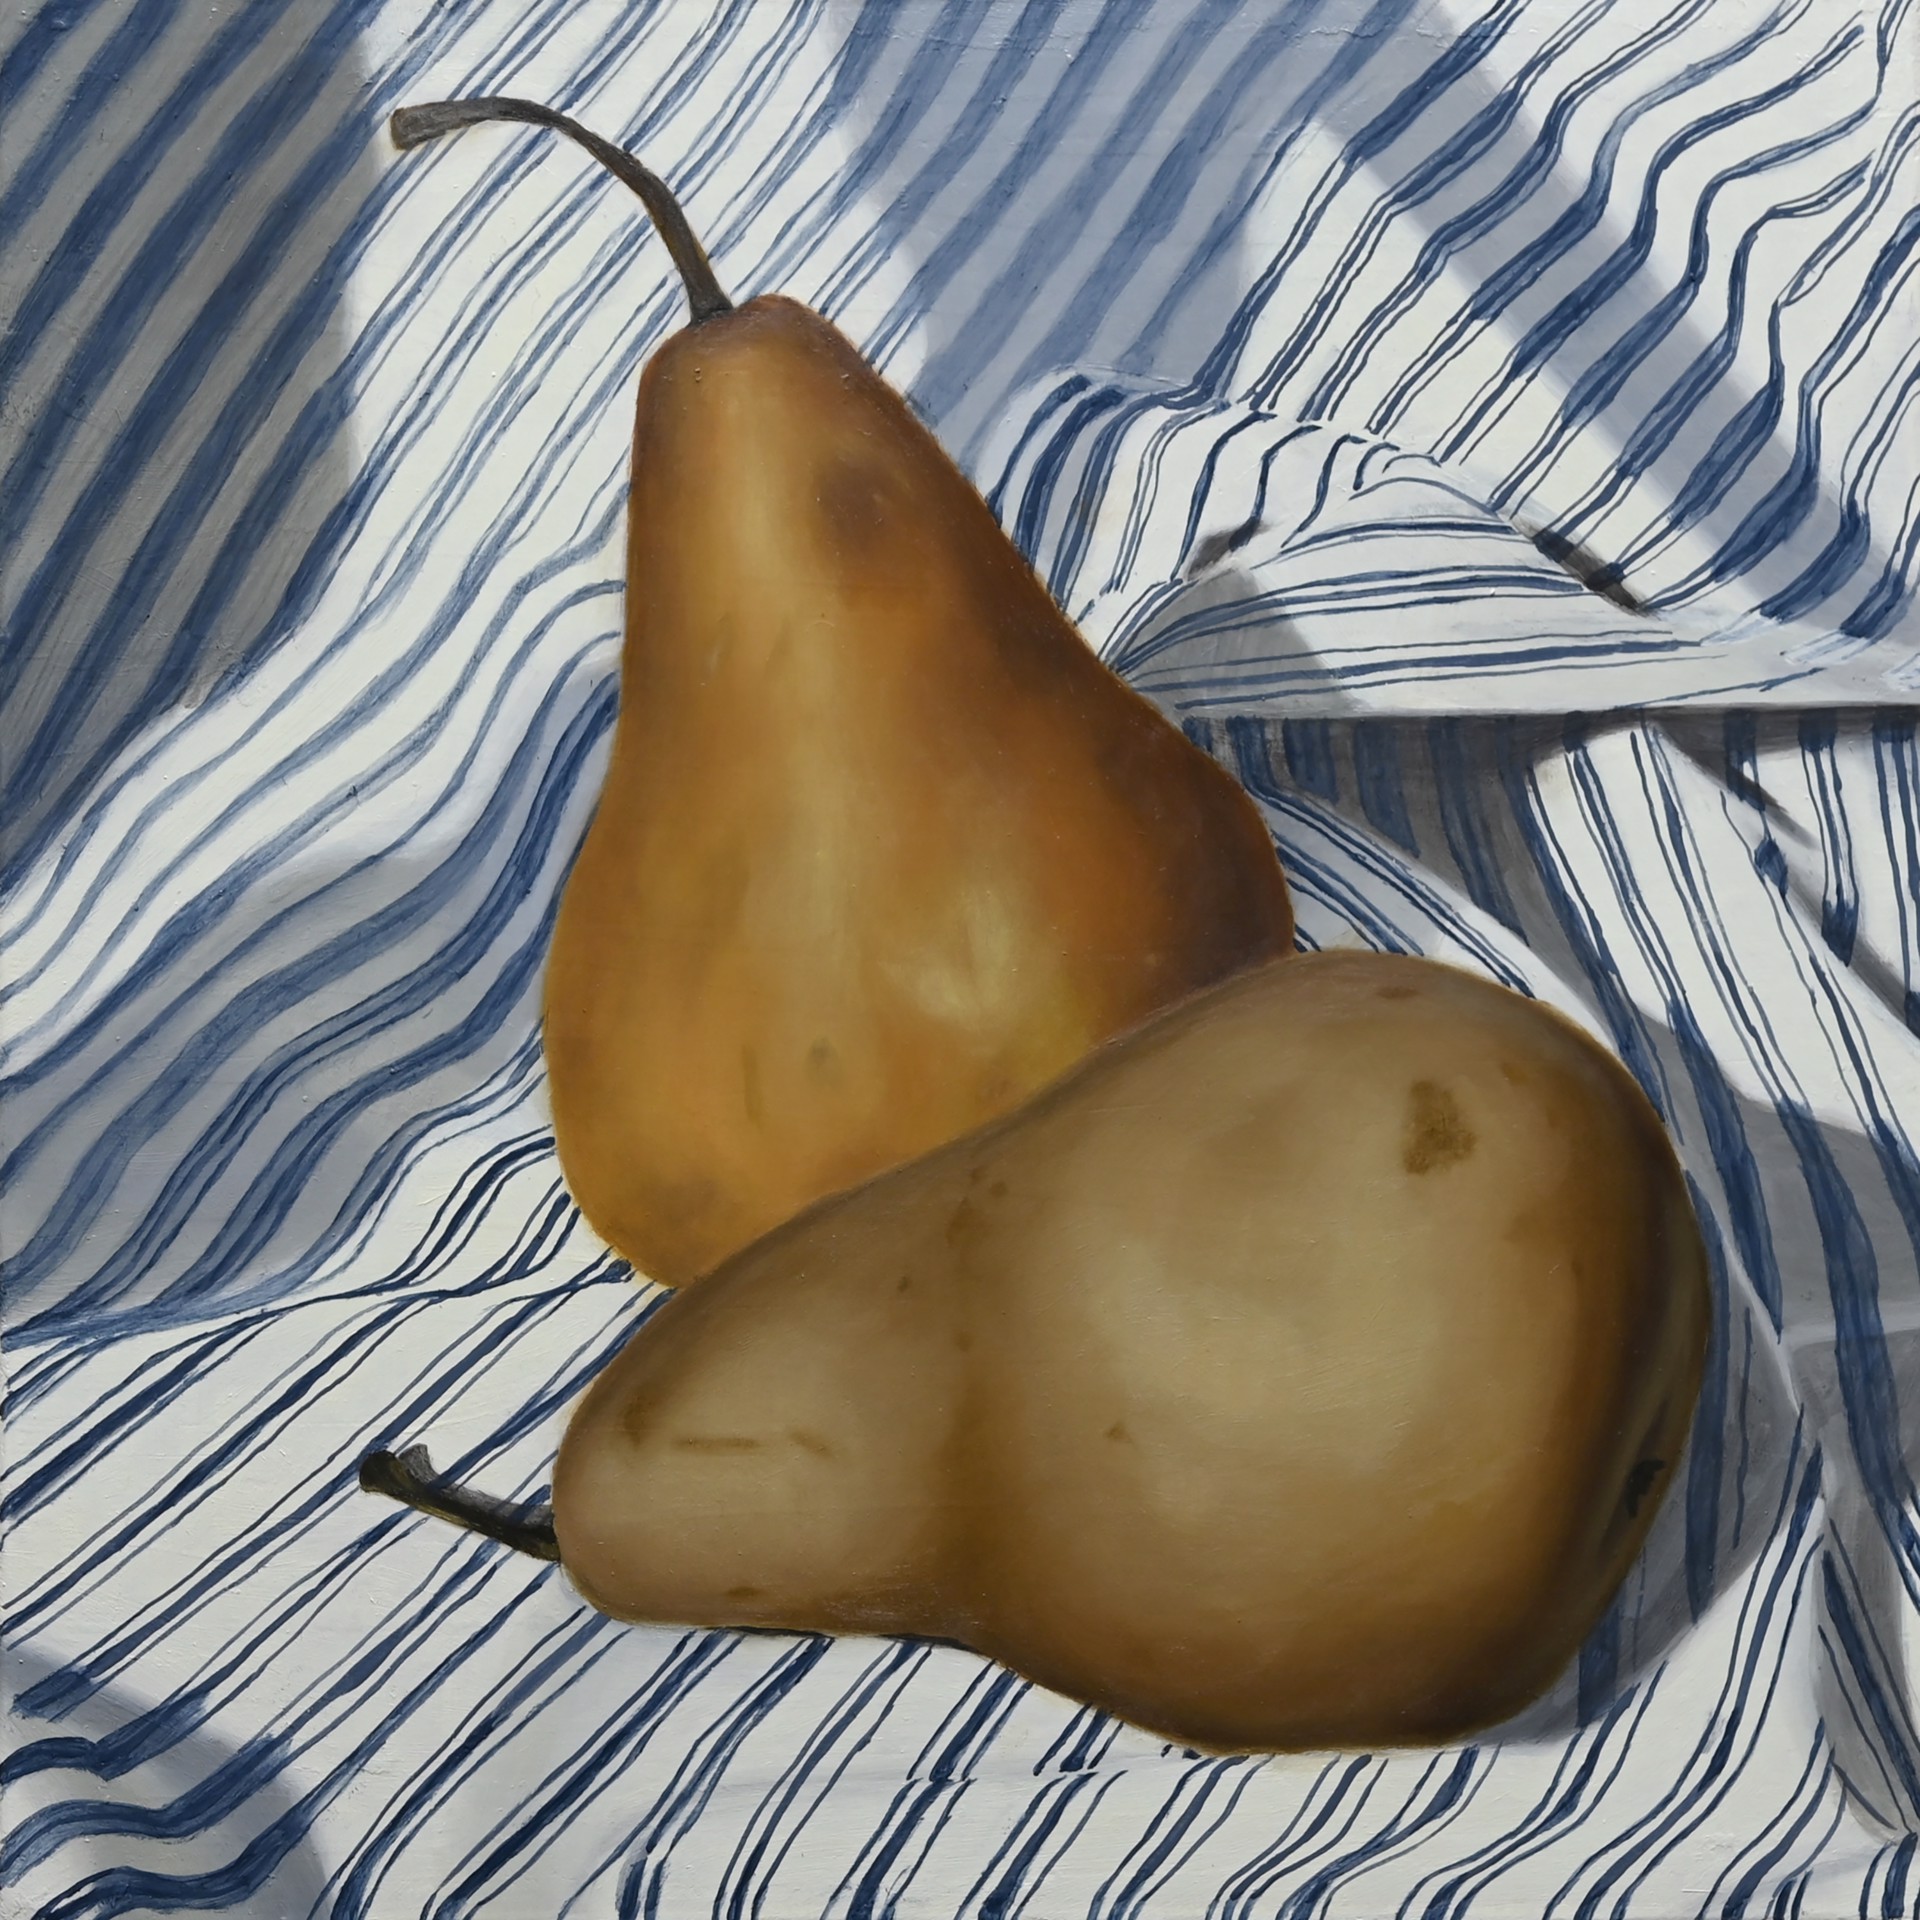 Pear Pair by Jordan Baker